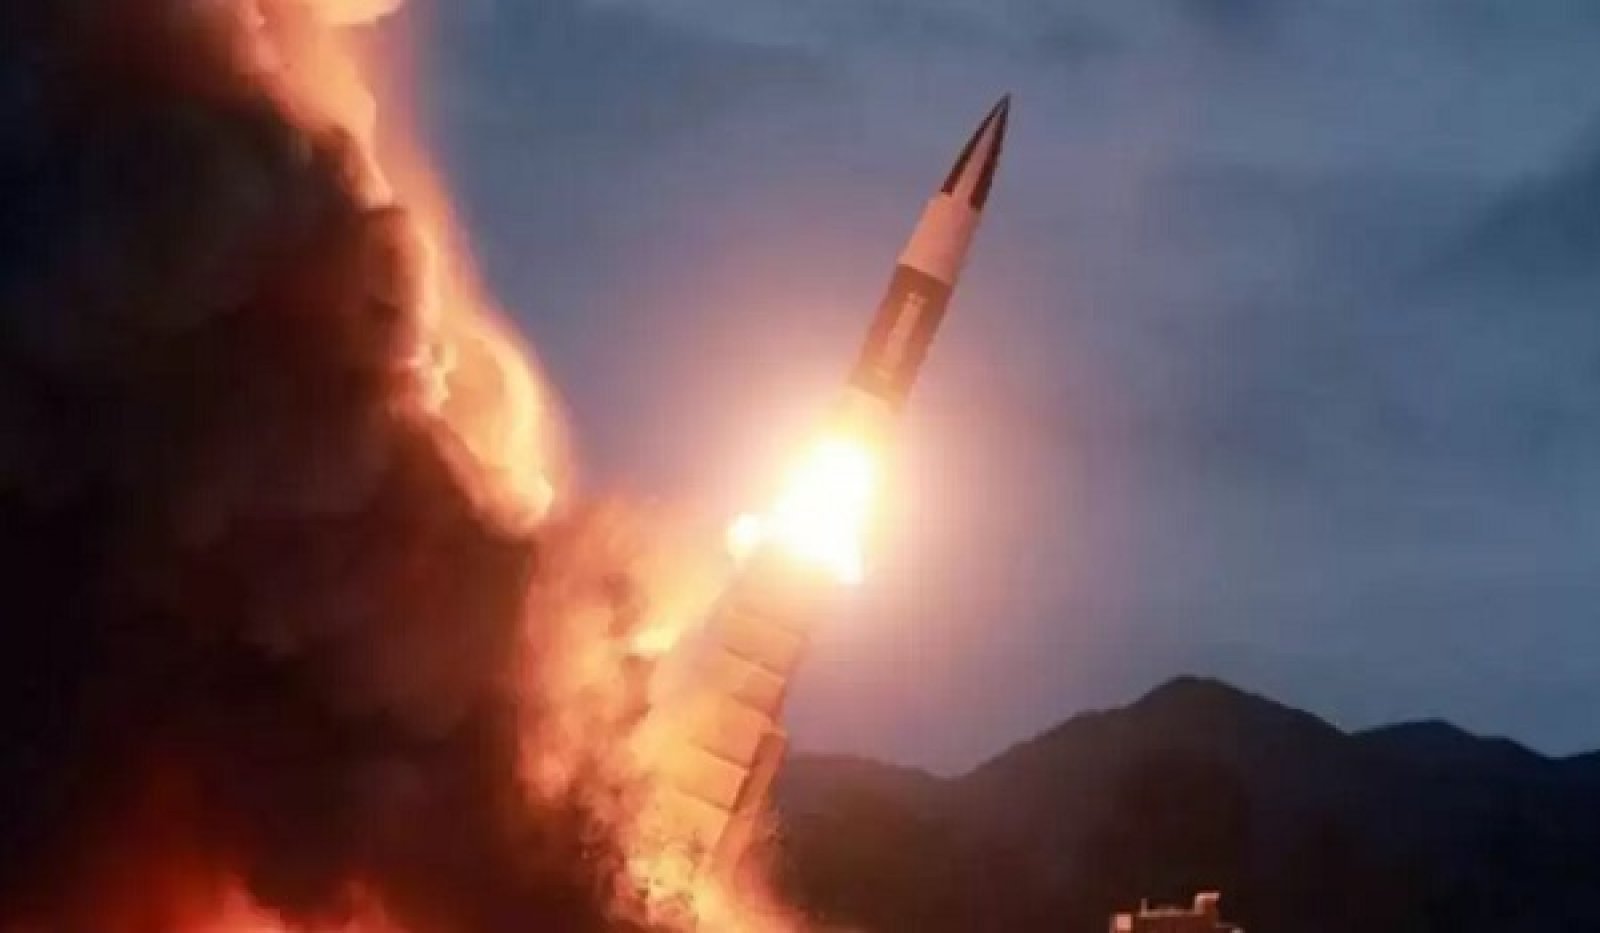 उत्तर कोरिया ने समुद्र की ओर दागी बैलिस्टिक मिसाइल, दक्षिण कोरिया ने ऐसे दिया जवाब